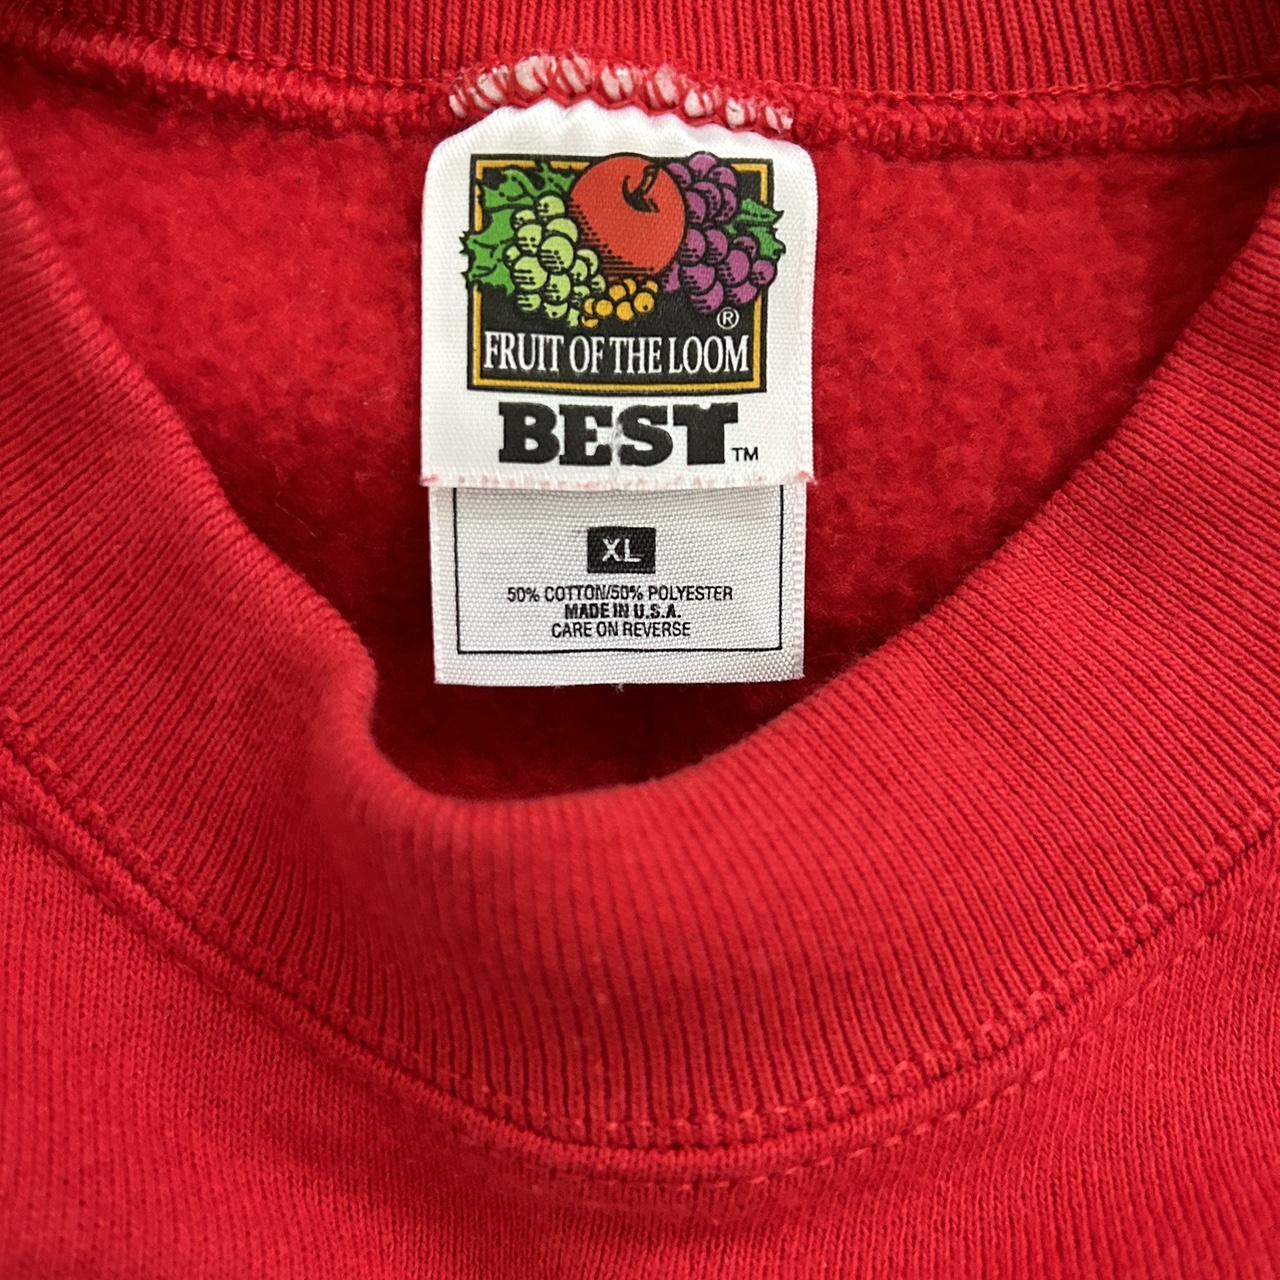 1996/ fruit of loom best sweatshirt. GOLDEN ANGEL 😇 - Depop